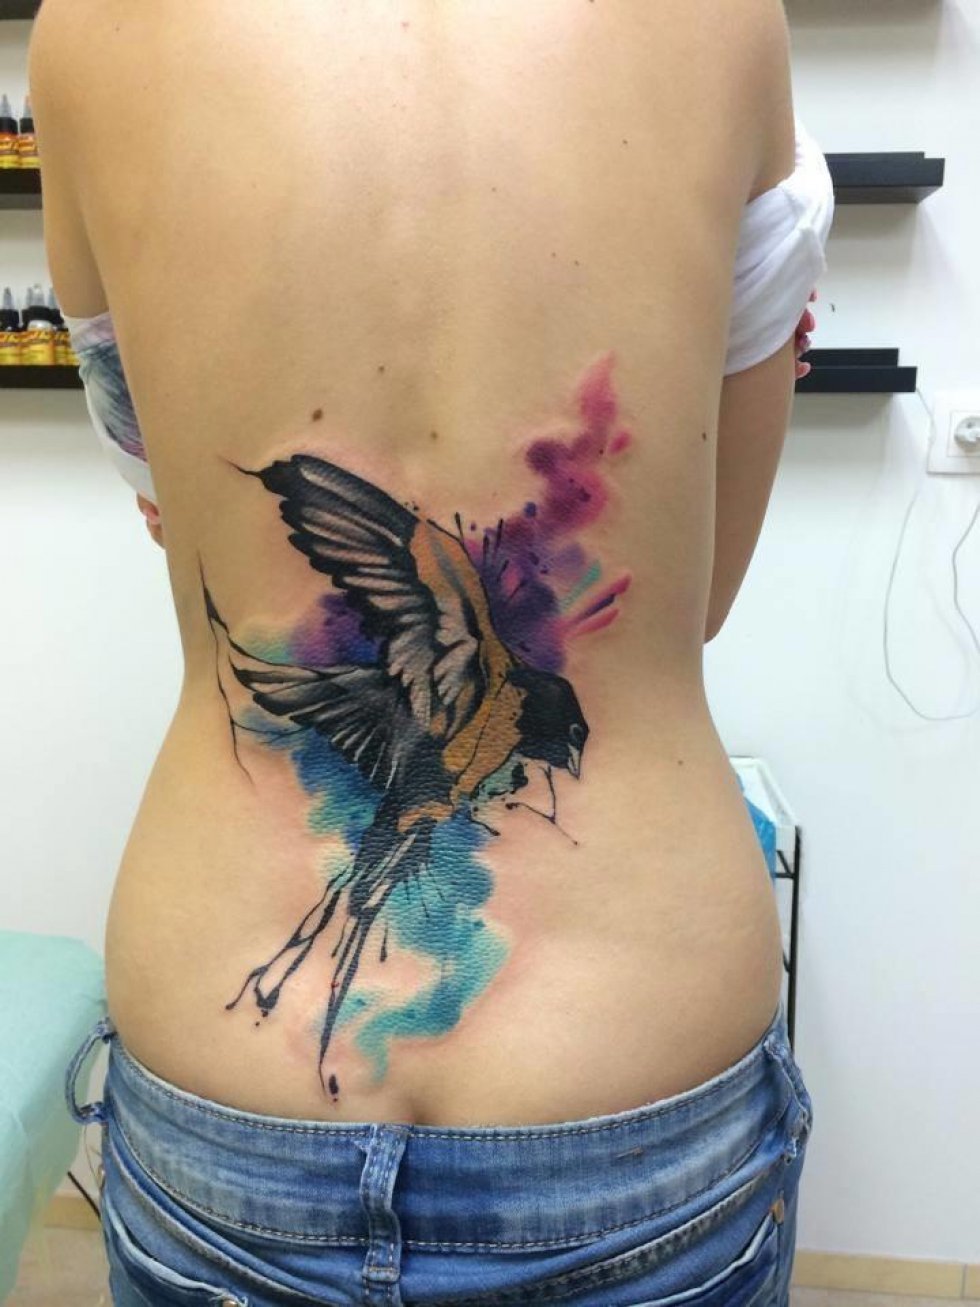 Watercolor tattoos - det nye 'sort' inden for tatoveringer